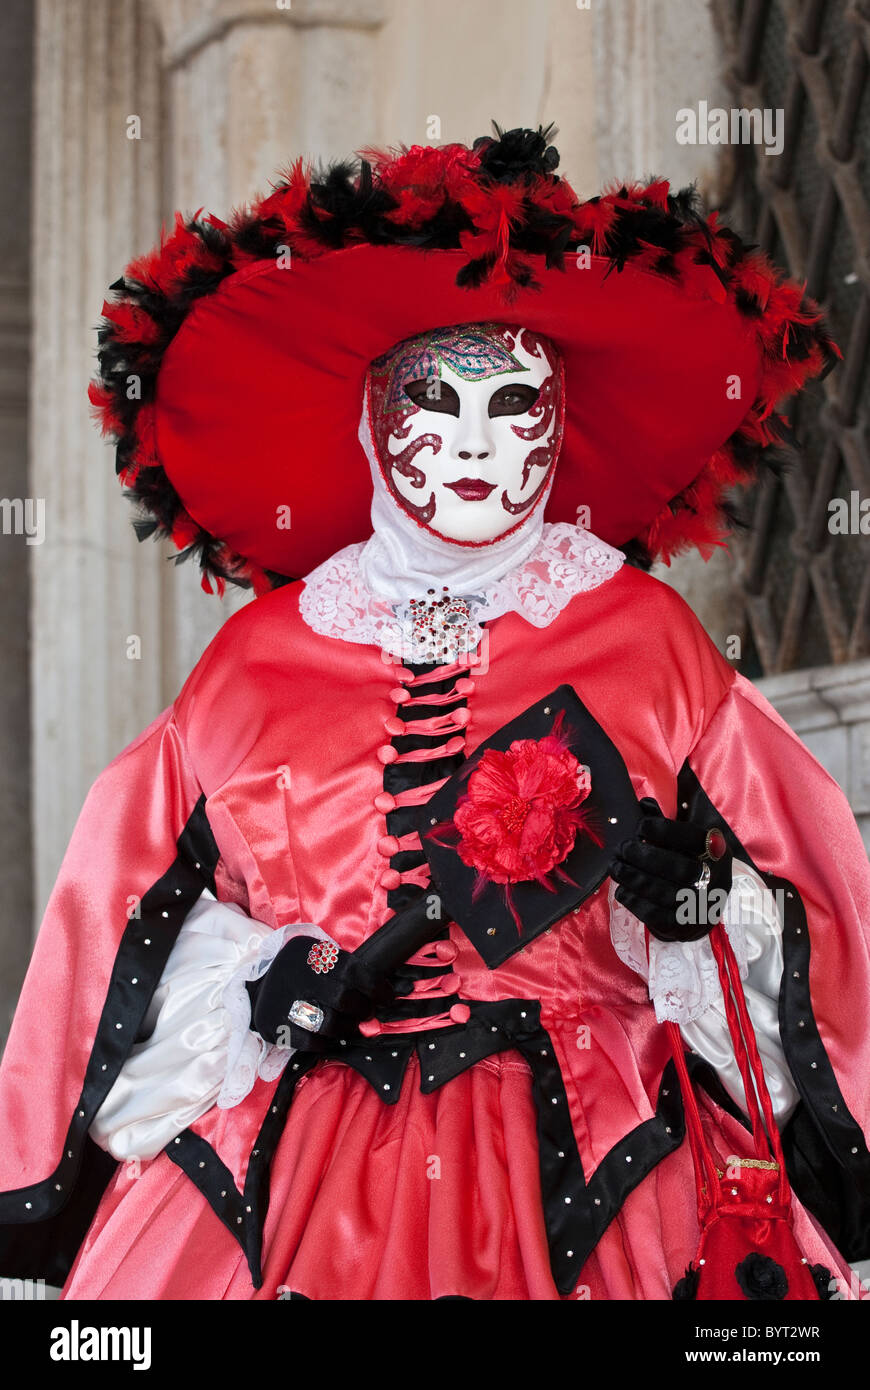 Einzelne venezianische Maske während des Karnevals in rote Verkleidung mit  Hut Stockfotografie - Alamy